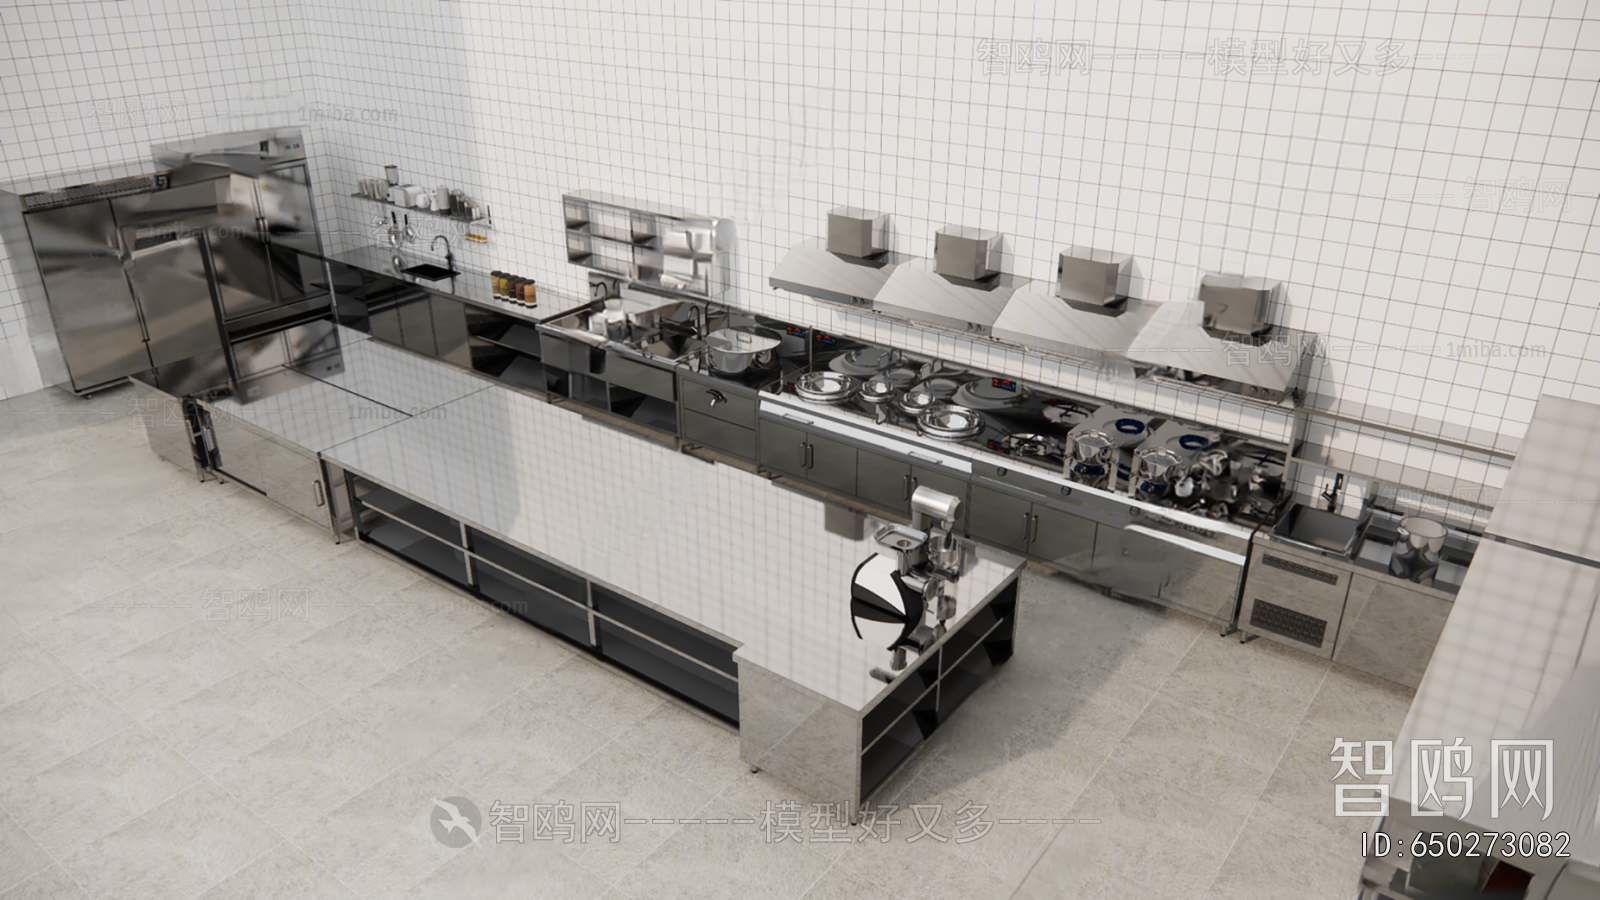 Modern Kitchen Electric Gas Range